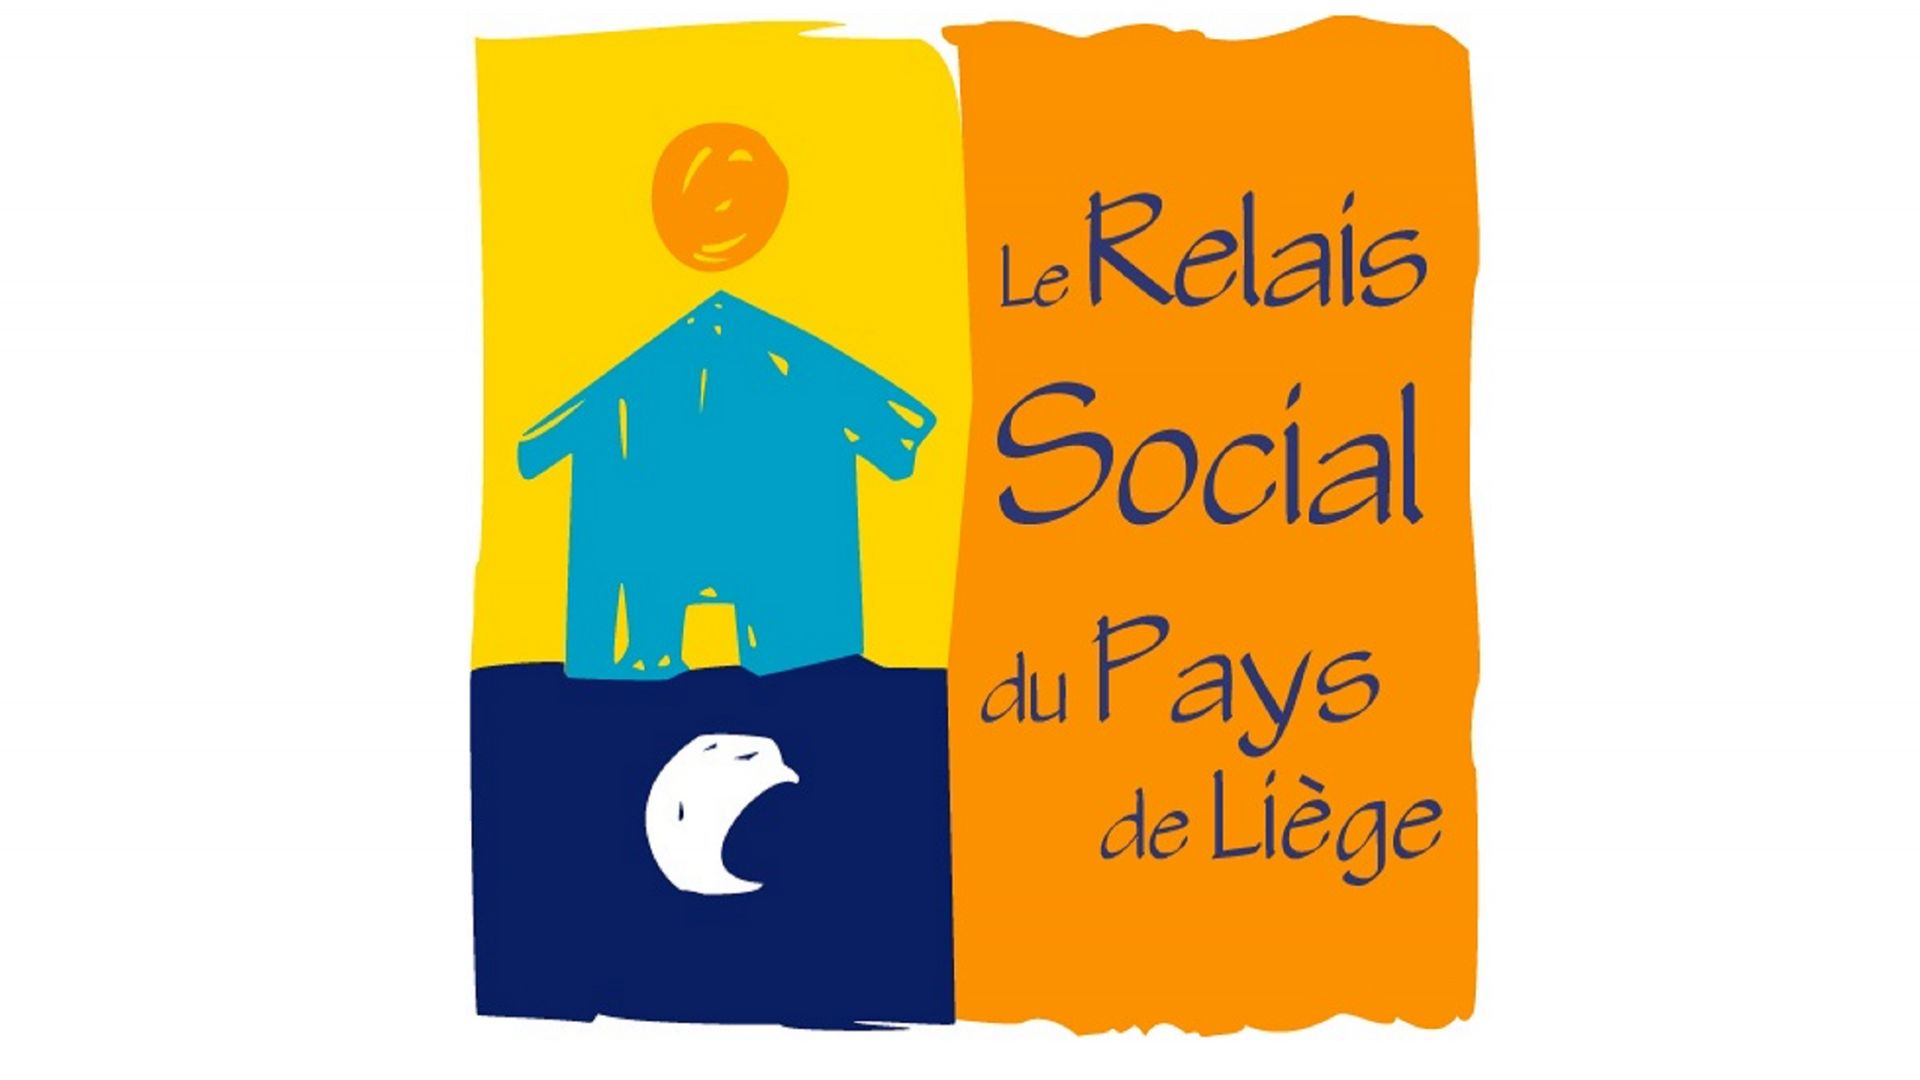 Le Relais social du pays de Liège y coordonne le Plan Grand Froid